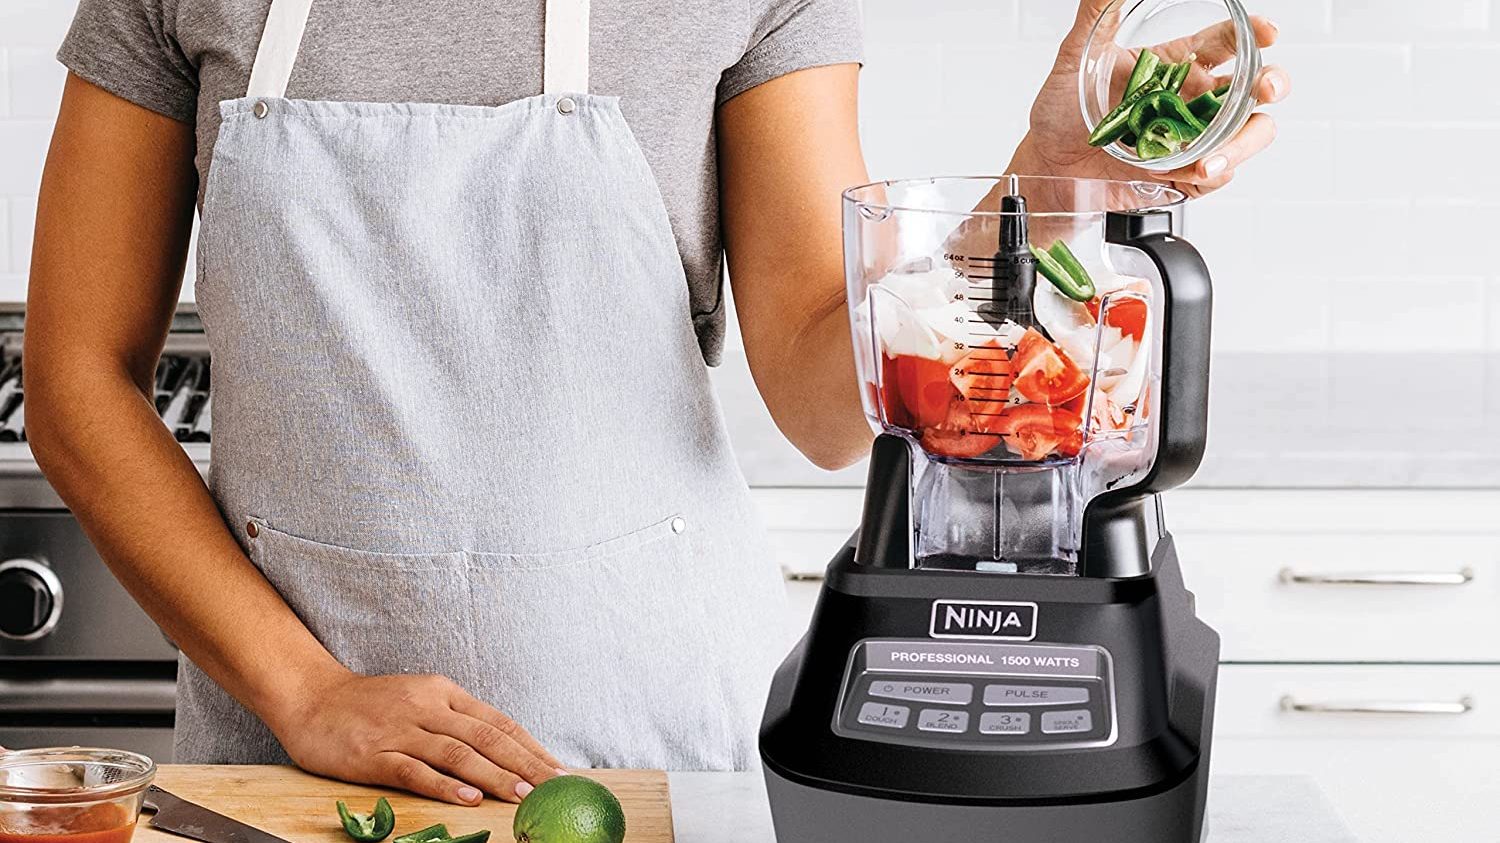 Ninja kitchen system blender, food processor